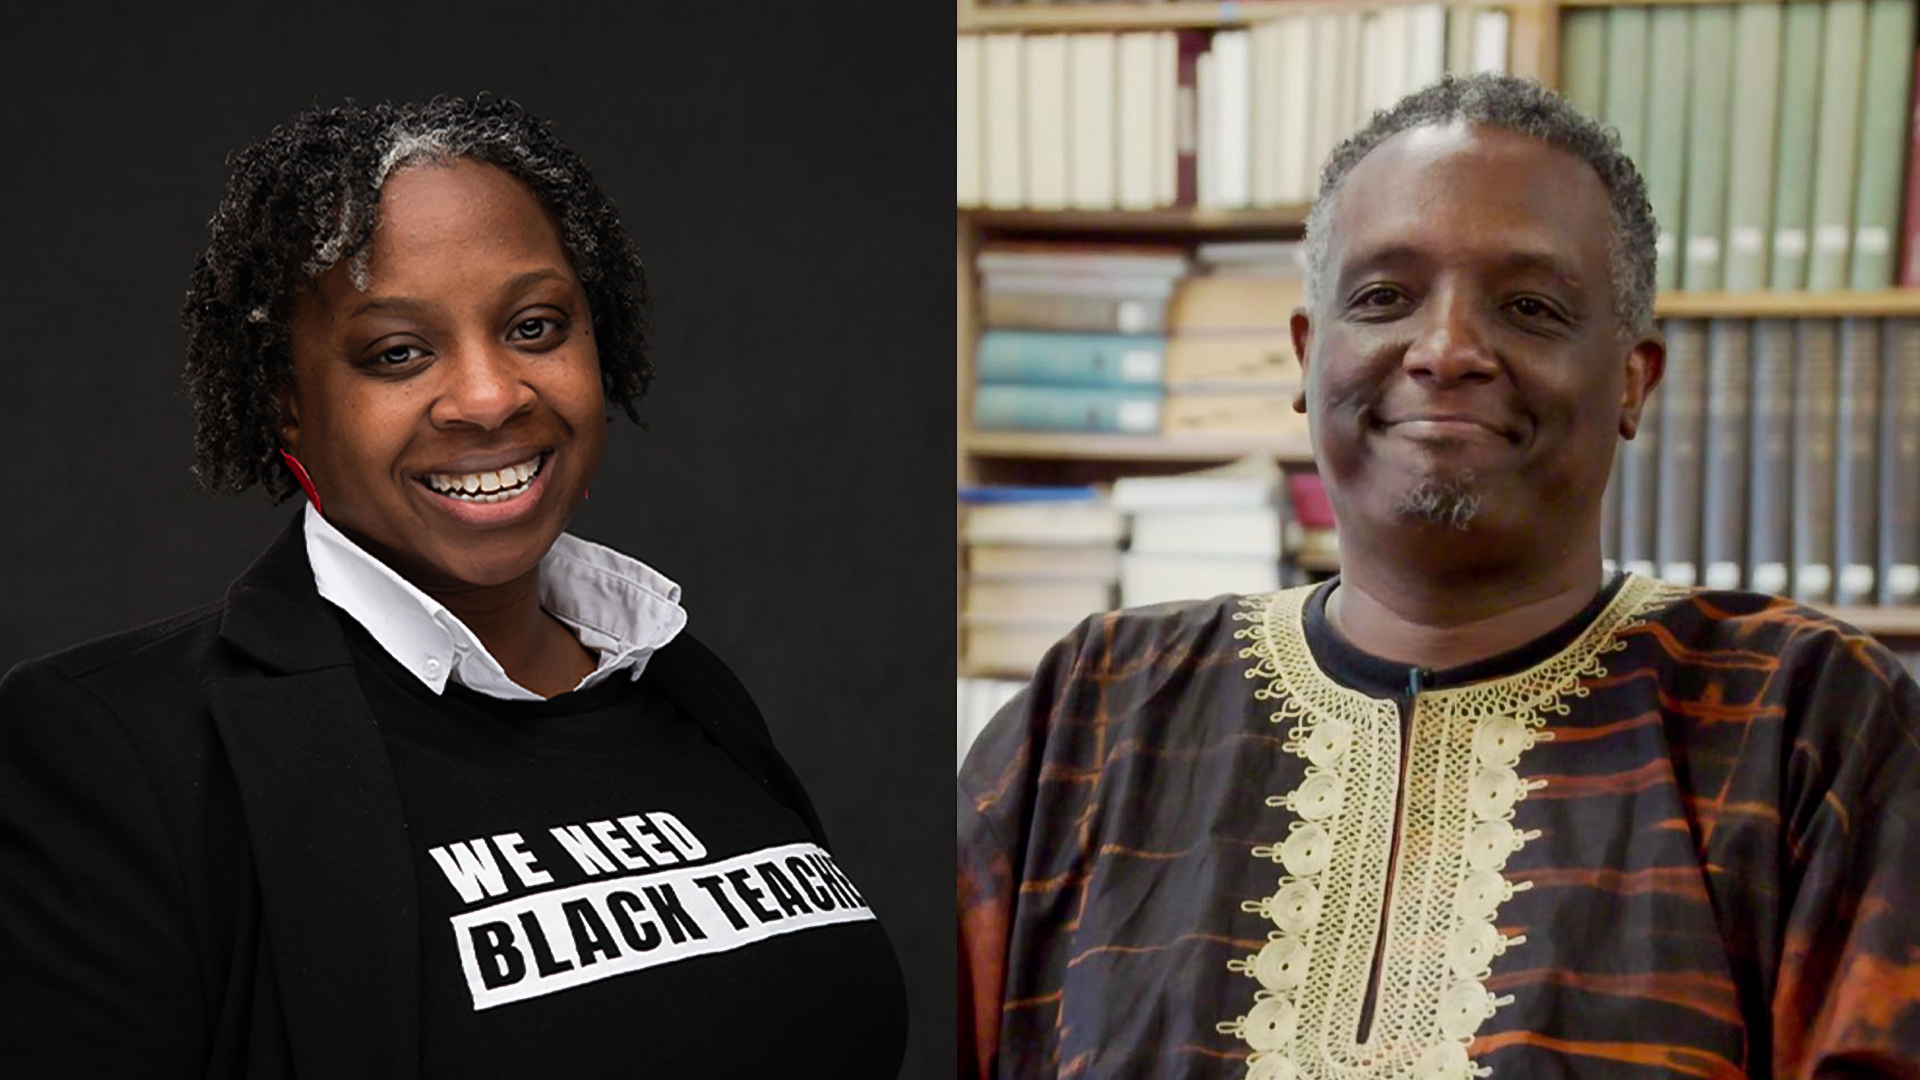 Shayna Terrell of the Center for Black Educator Development and Dr. Greg Carr, Professor at Howard University